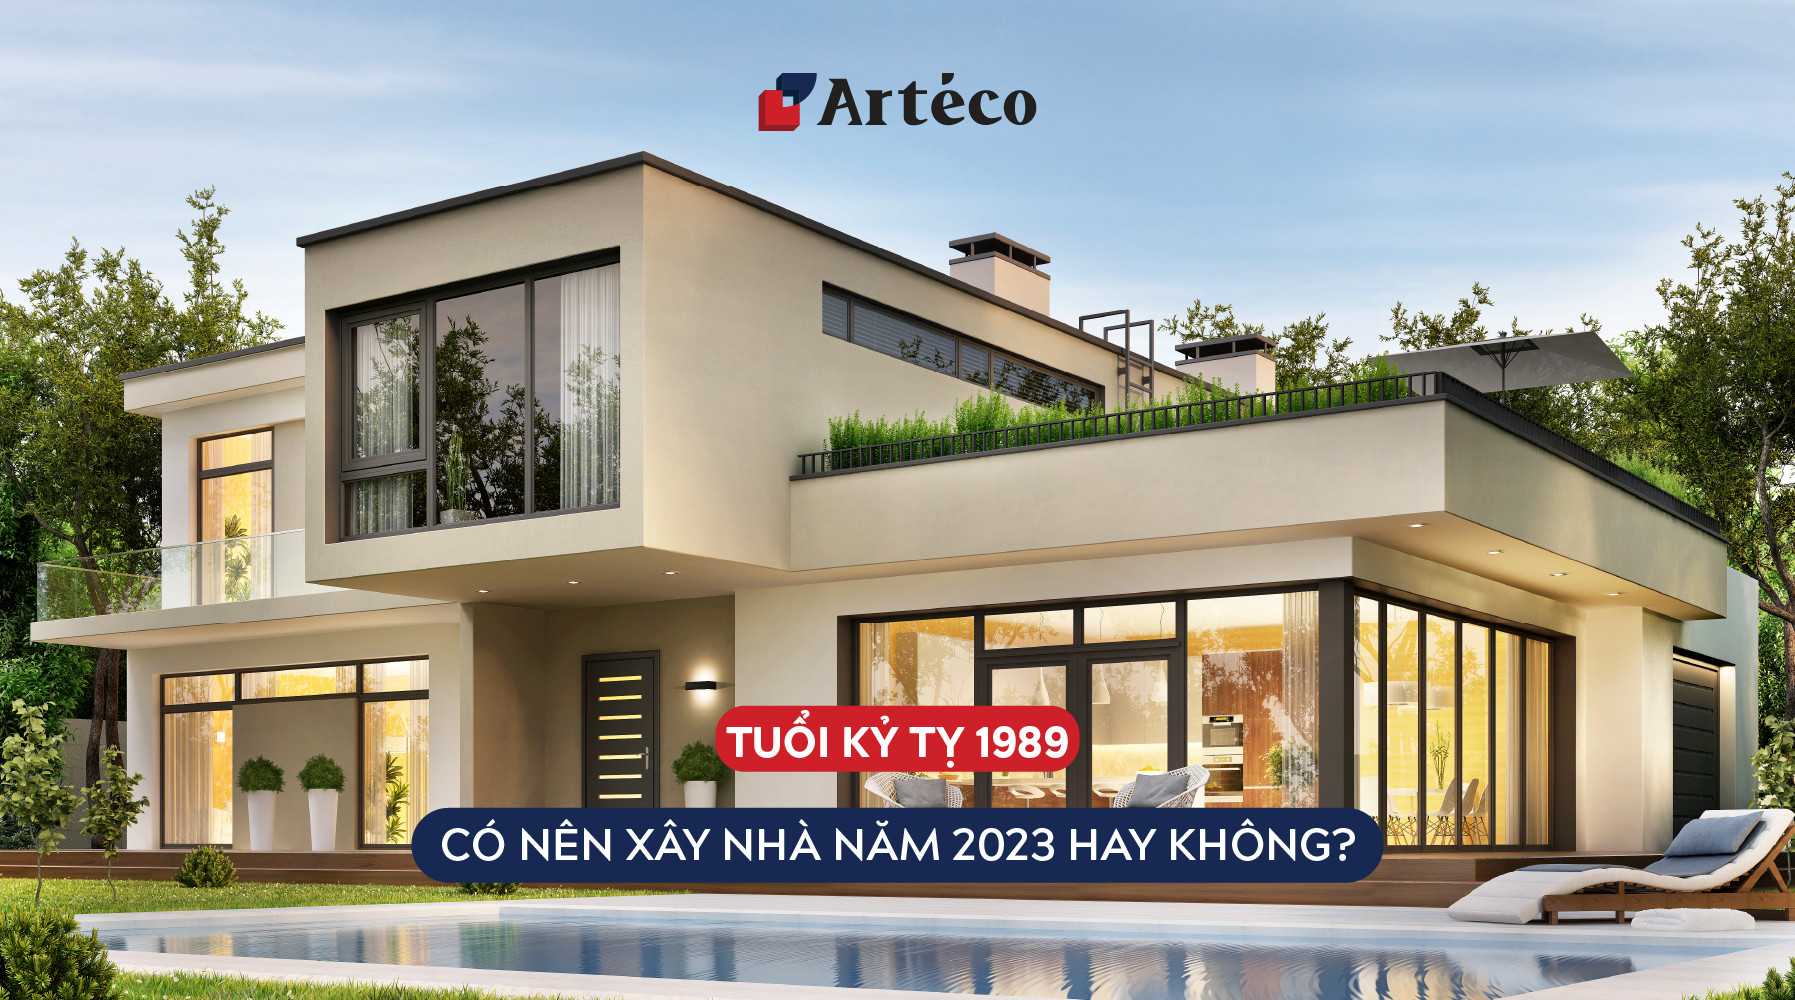 Arteco - 1989 xây nhà năm 2023